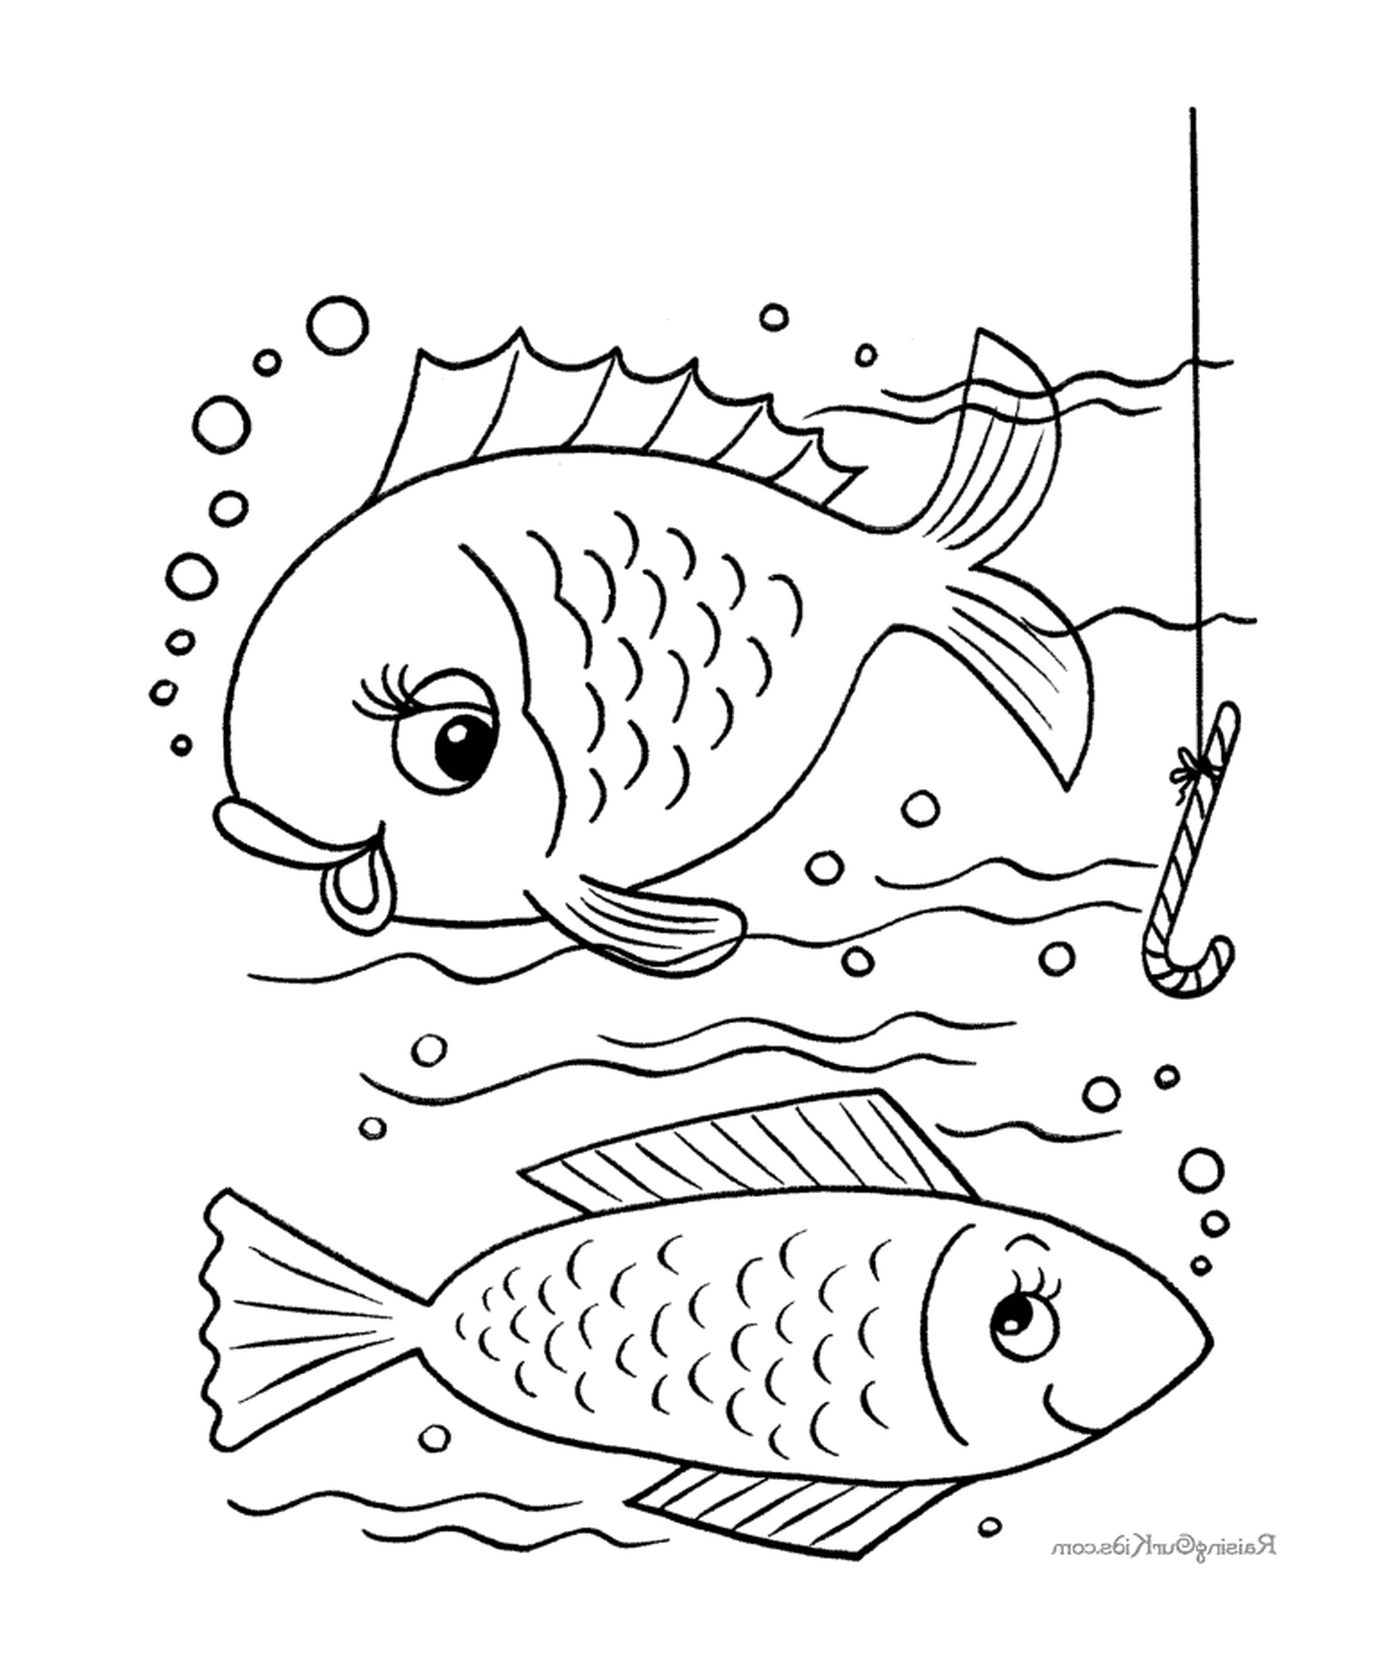  Dos peces nadan en el agua mientras que otro pez 